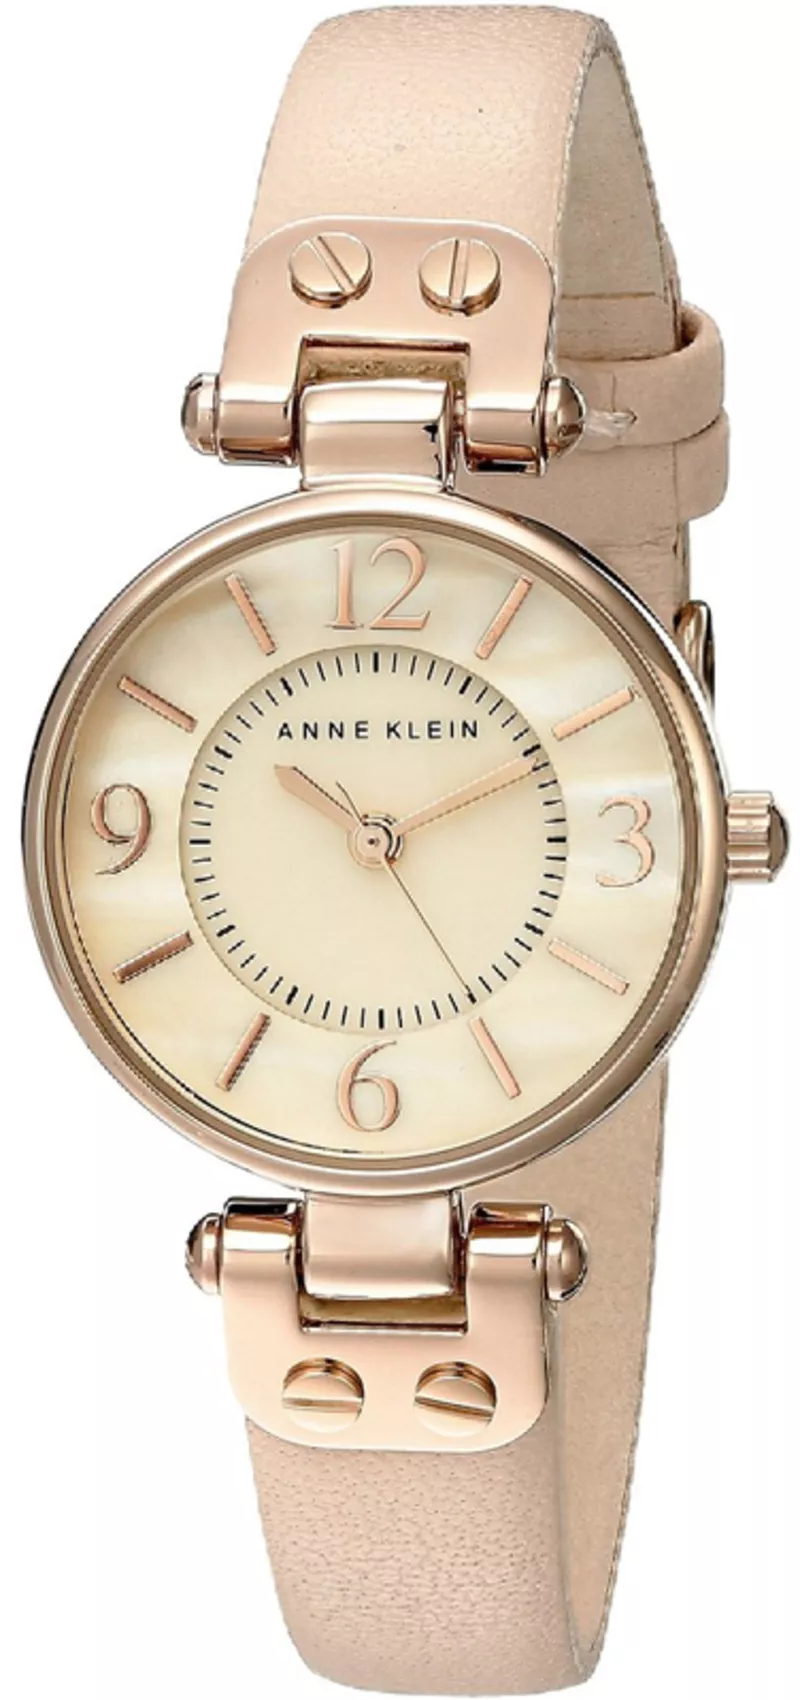 Часы Anne Klein 10/9442RGLP